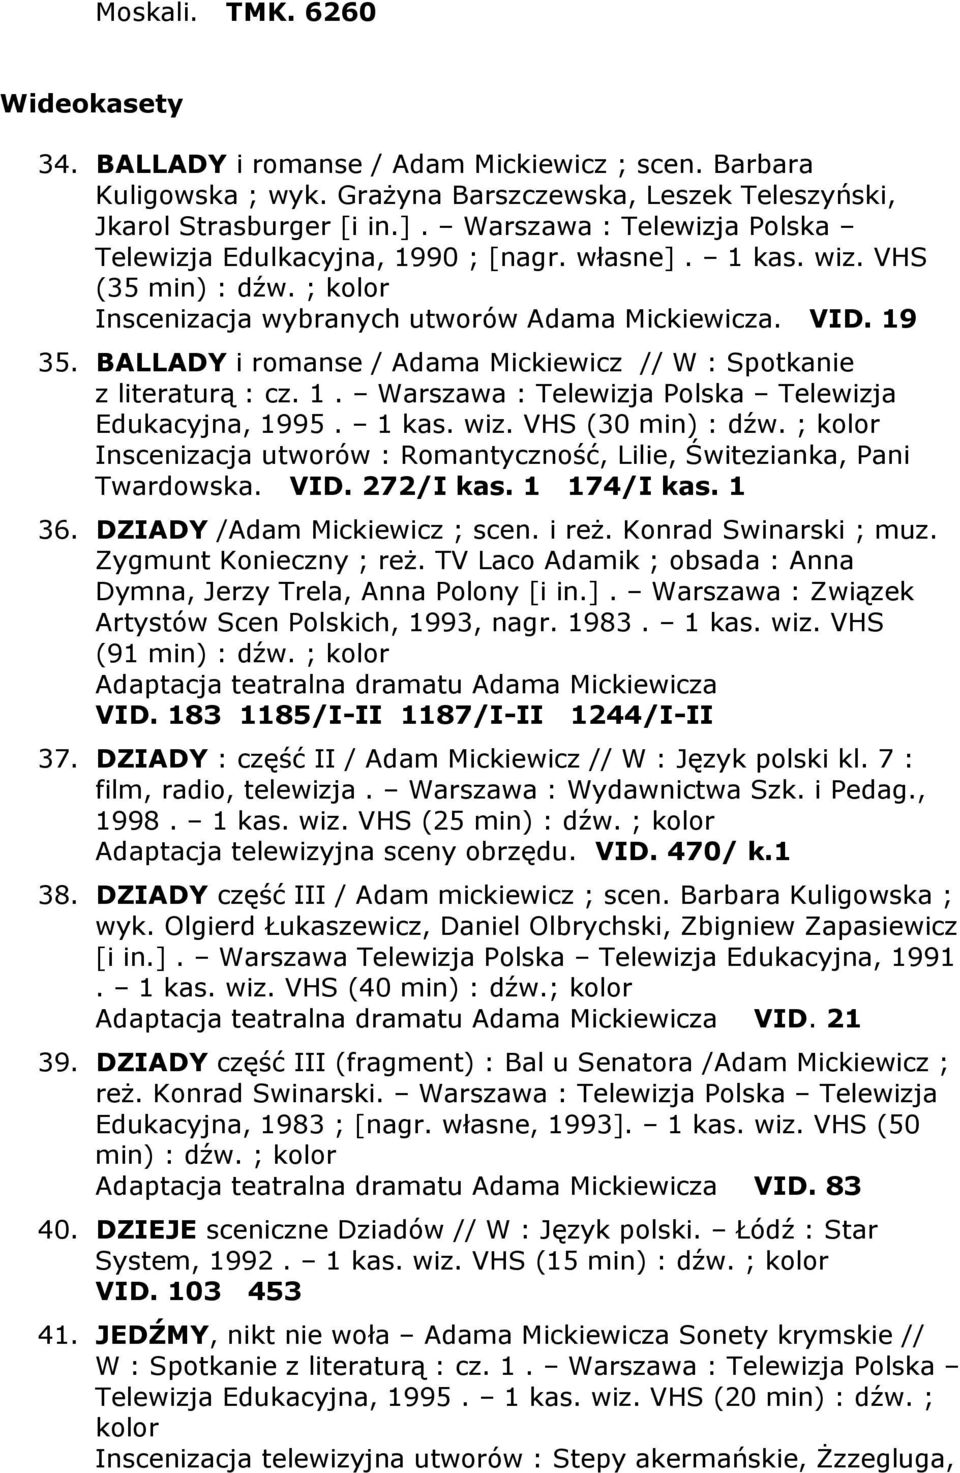 BALLADY i romanse / Adama Mickiewicz // W : Spotkanie z literaturą : cz. 1. Warszawa : Telewizja Polska Telewizja Edukacyjna, 1995. 1 kas. wiz. VHS (30 min) : dźw.